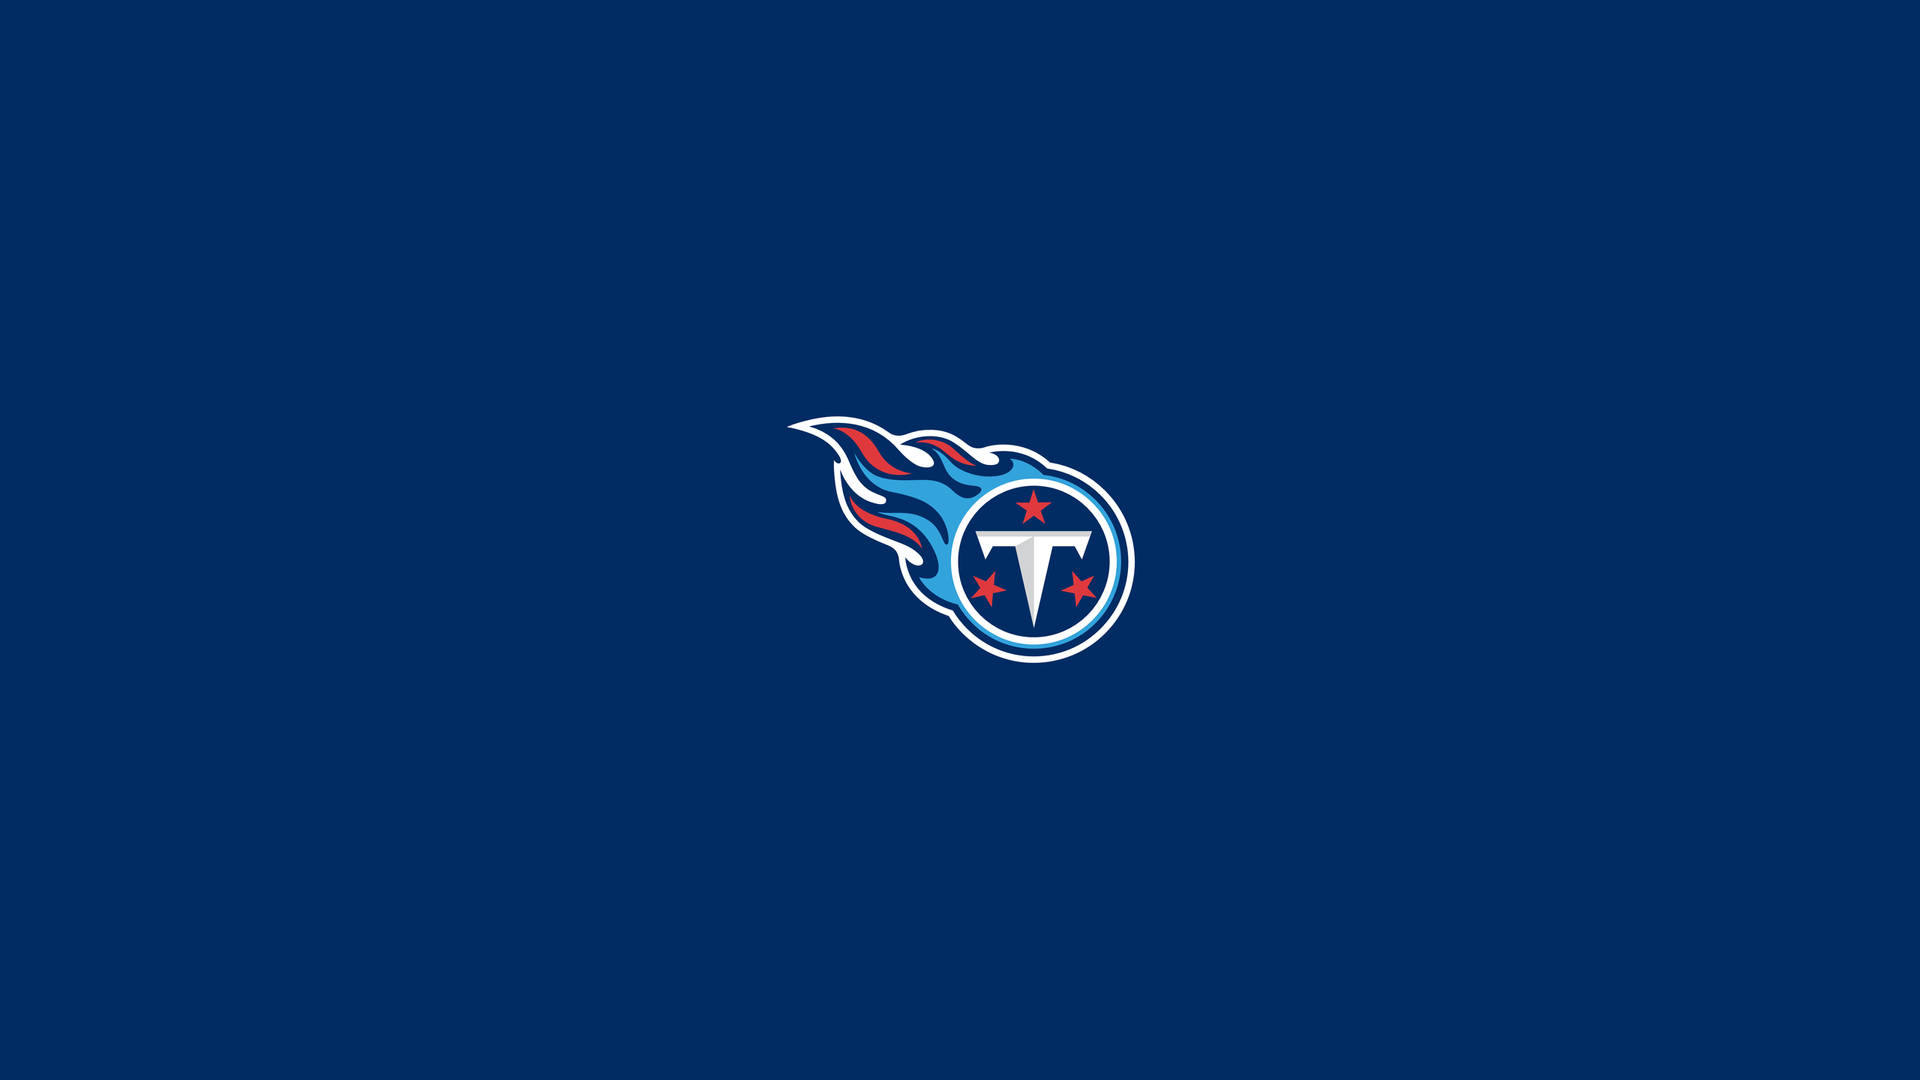 Fondoazul Con El Logotipo De Los Tennessee Titans. Fondo de pantalla